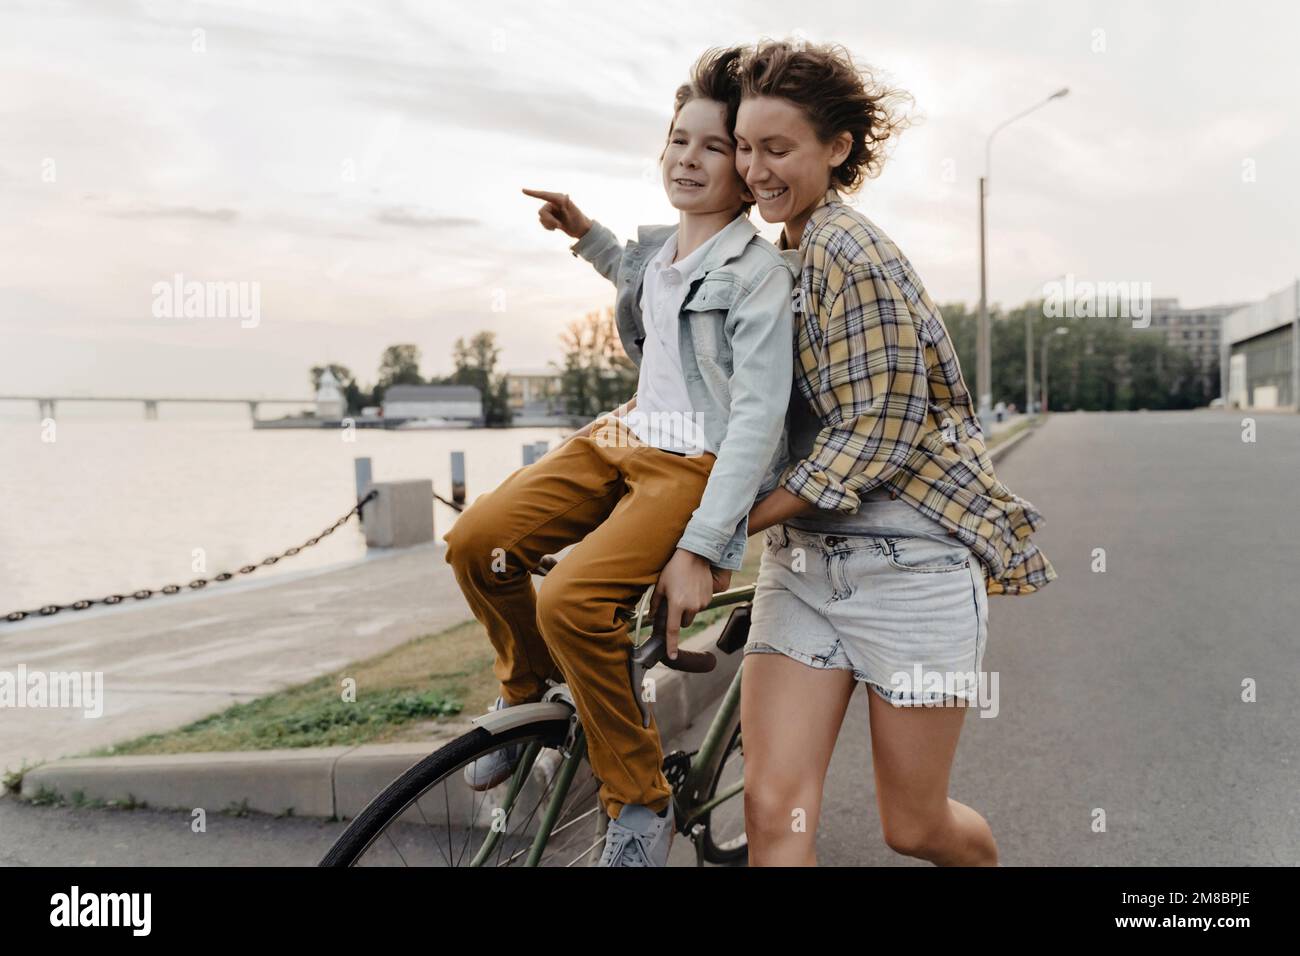 Giovane madre e figlio che si divertono mentre cavalcano in bicicletta. Ragazzino seduto sul manubrio di una bicicletta guidata dalla madre all'aperto. Foto Stock